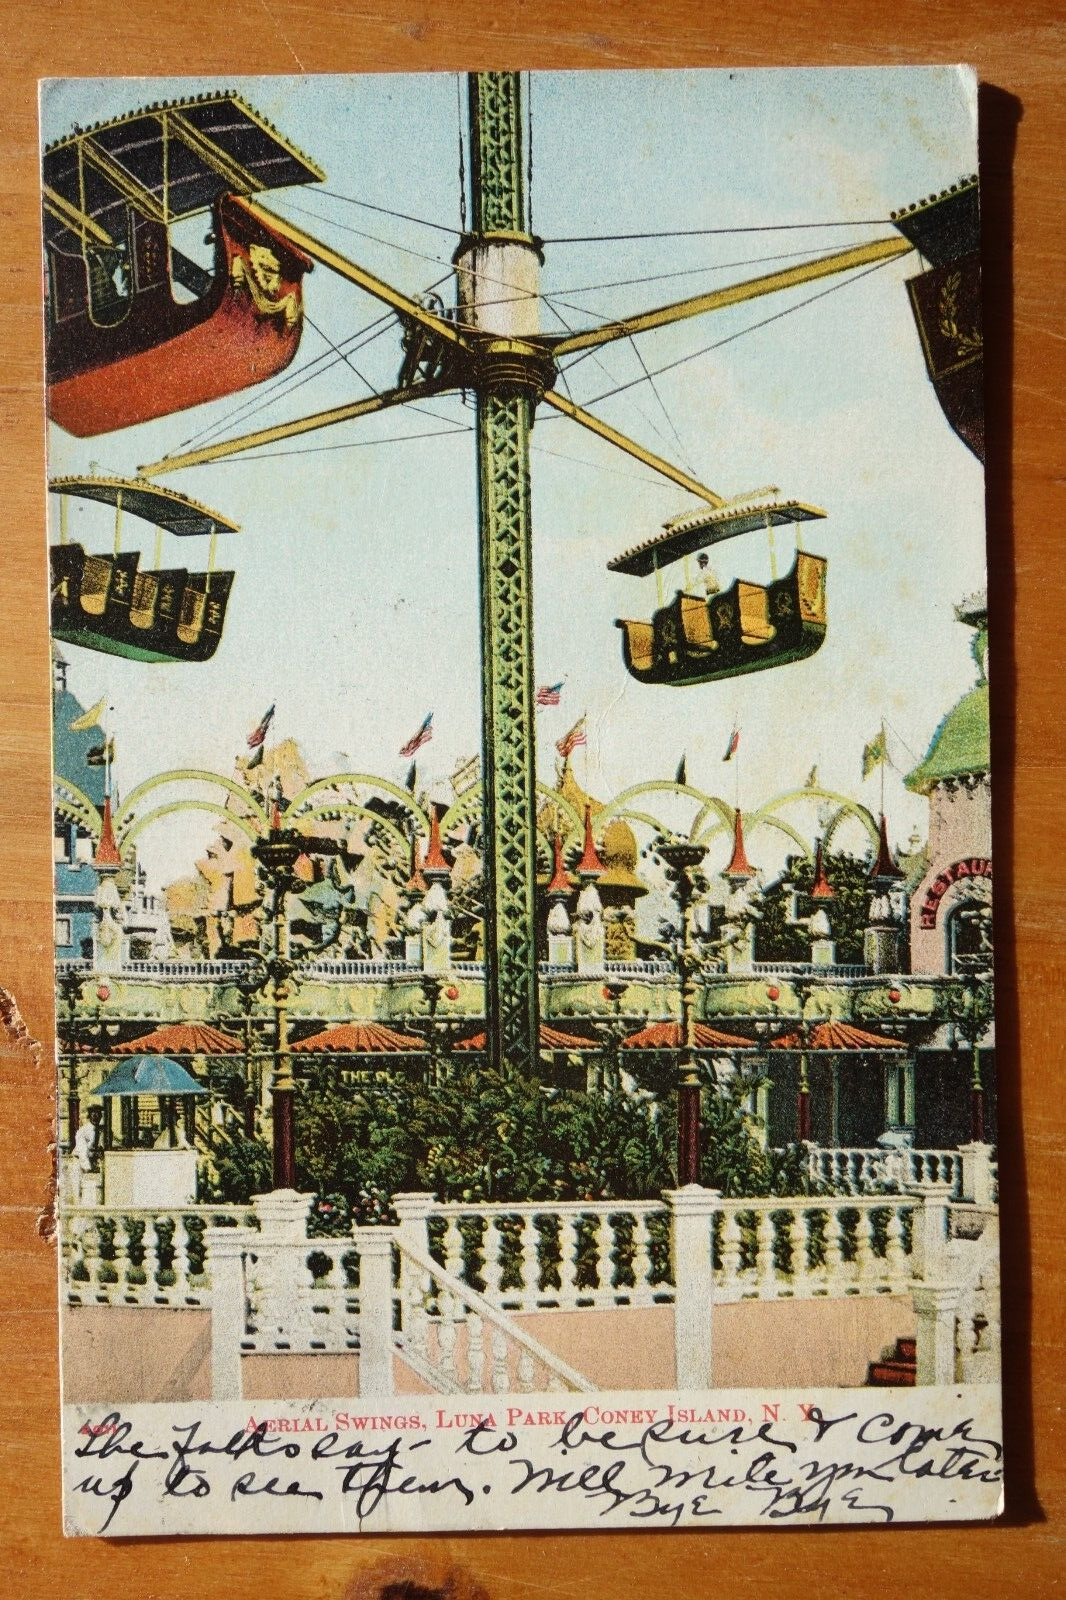 Aerial Swing Luna Park Coney Island, NY NY postcard posted 1908